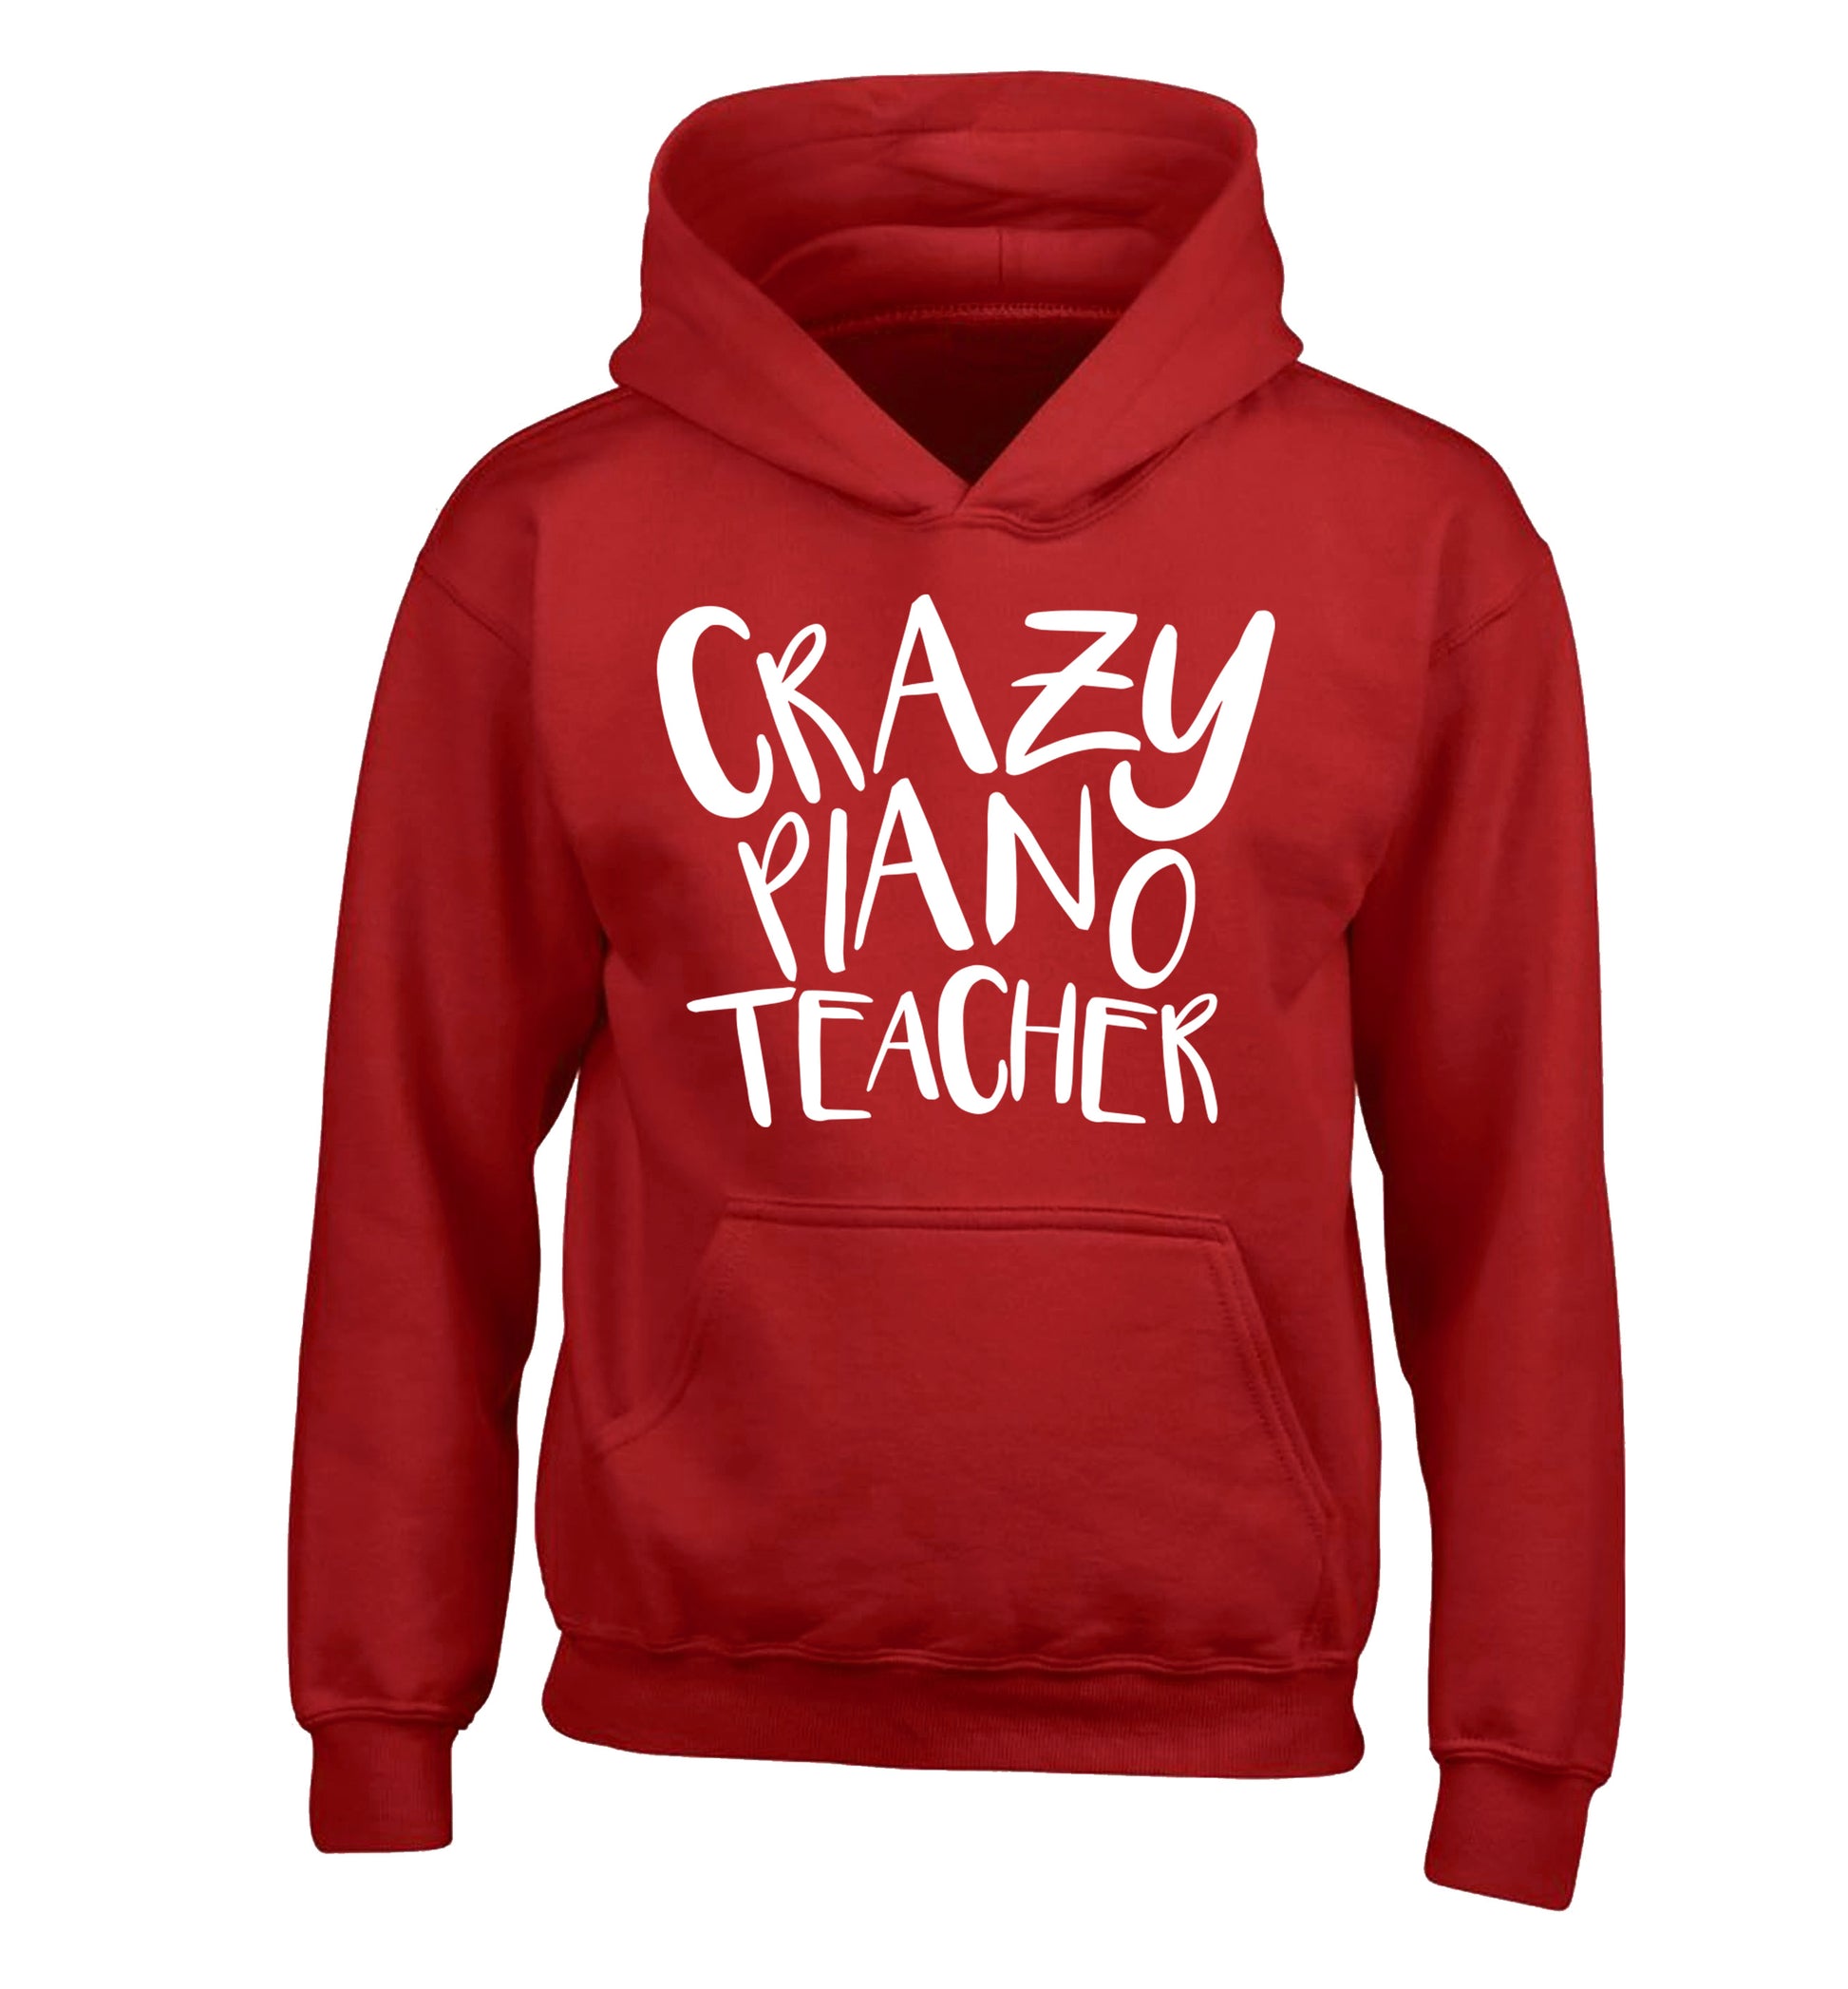 Crazy piano teacher children's red hoodie 12-13 Years